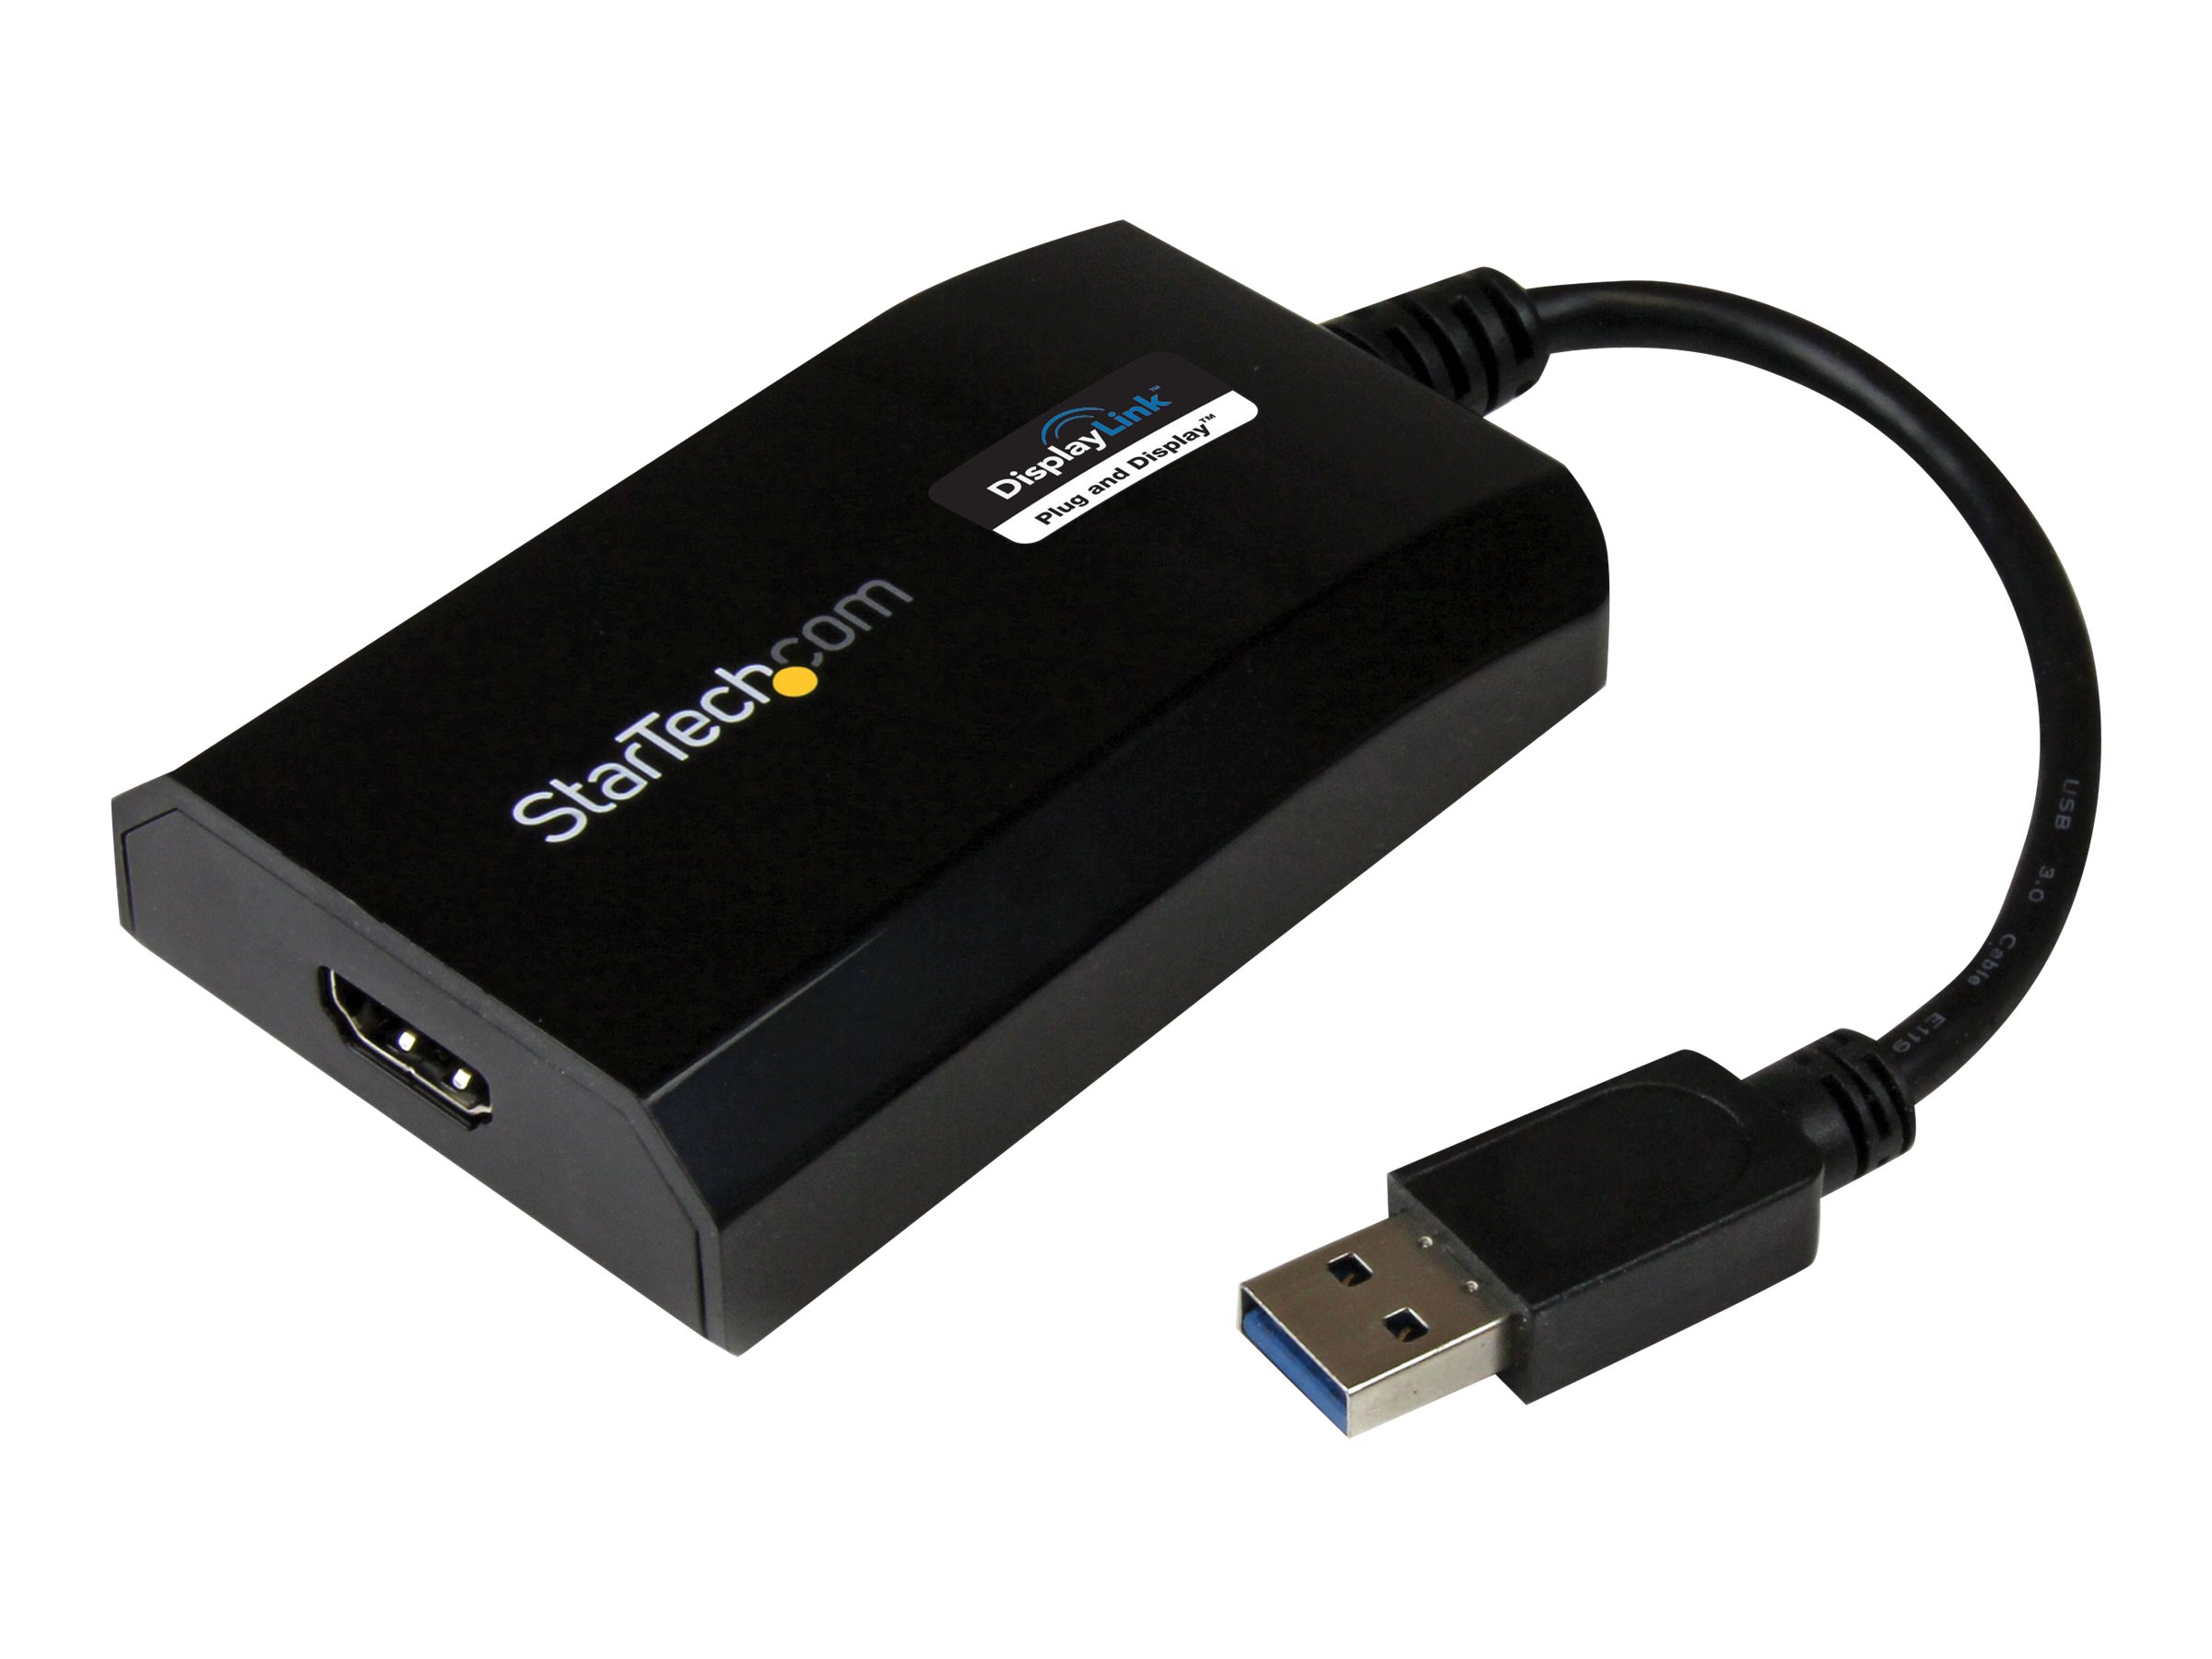 StarTech.com Adaptateur vidéo multi-écrans USB 3.0 vers HDMI pour Mac / PC - Carte graphique externe certifié DisplayLink - HD 1080p - M/F - Câble adaptateur - USB type A mâle pour HDMI femelle - 16 cm - noir - support 1920 x 1200 (WUXGA) - pour P/N: HDDVIMM3, HDMM12, HDMM15, HDMM1MP, HDMM2MP, HDMM3, HDMM3MP, HDMM50A, HDMM6, HDPMM50 - USB32HDPRO - Câbles HDMI